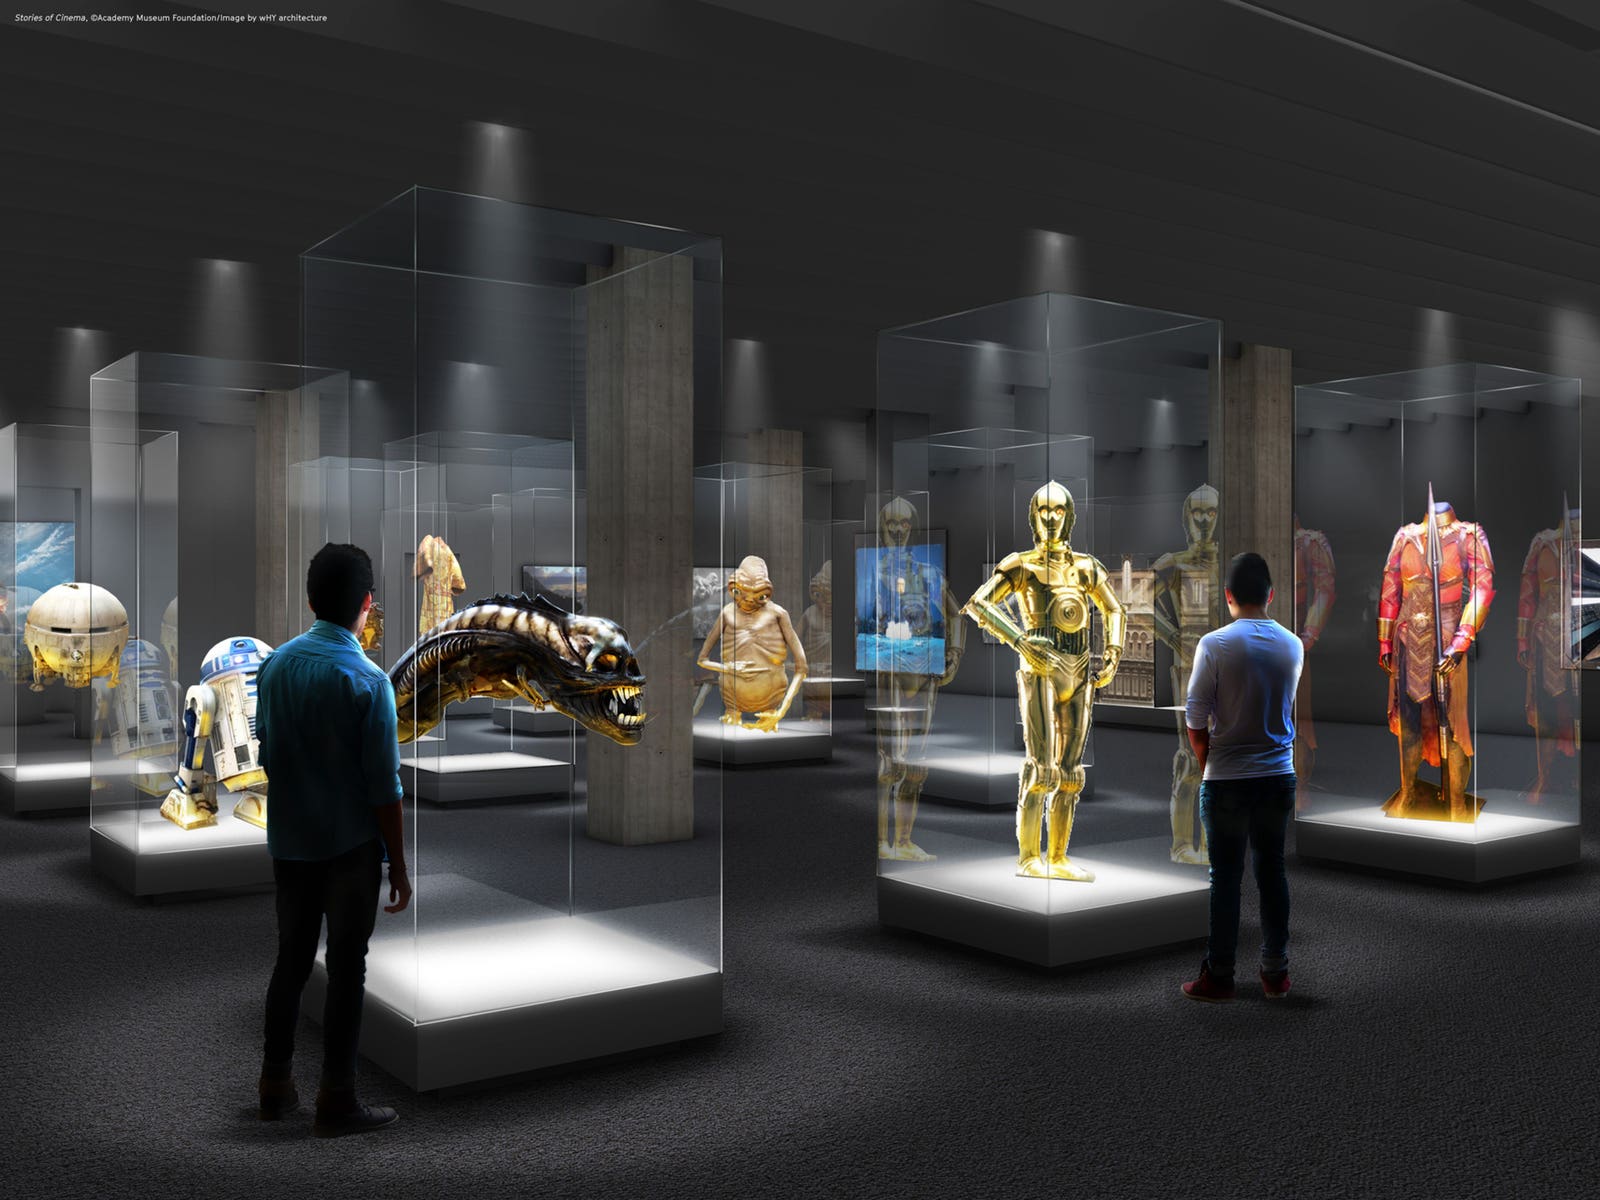 در ادامه این مطلب به تعدادی از باارزش ترین اشیاء موجود در موزه آکادمی اشاره می کنیم که با کمک ناتالی موریس متصدی این موزه انتخاب شده اند.